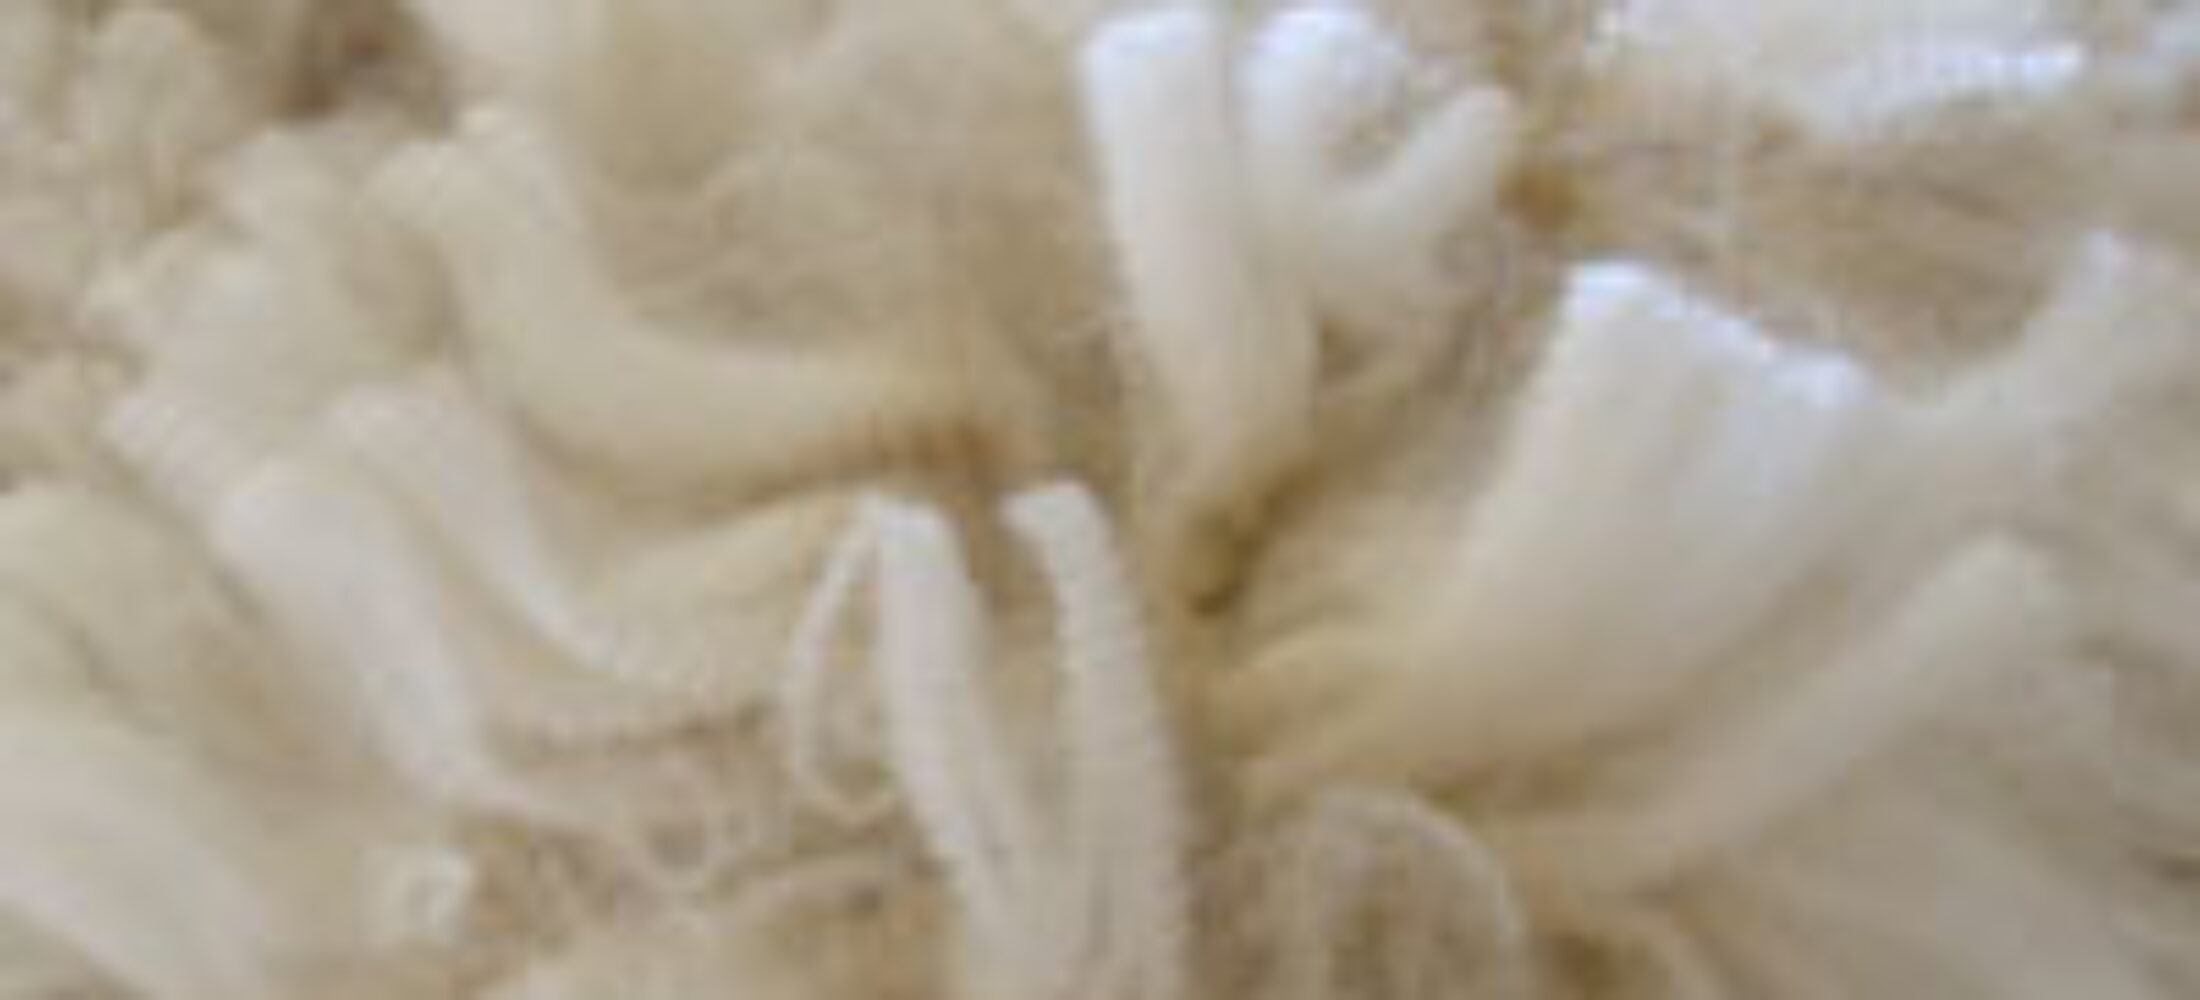 How does fiber diameter affect fleece weight and density?